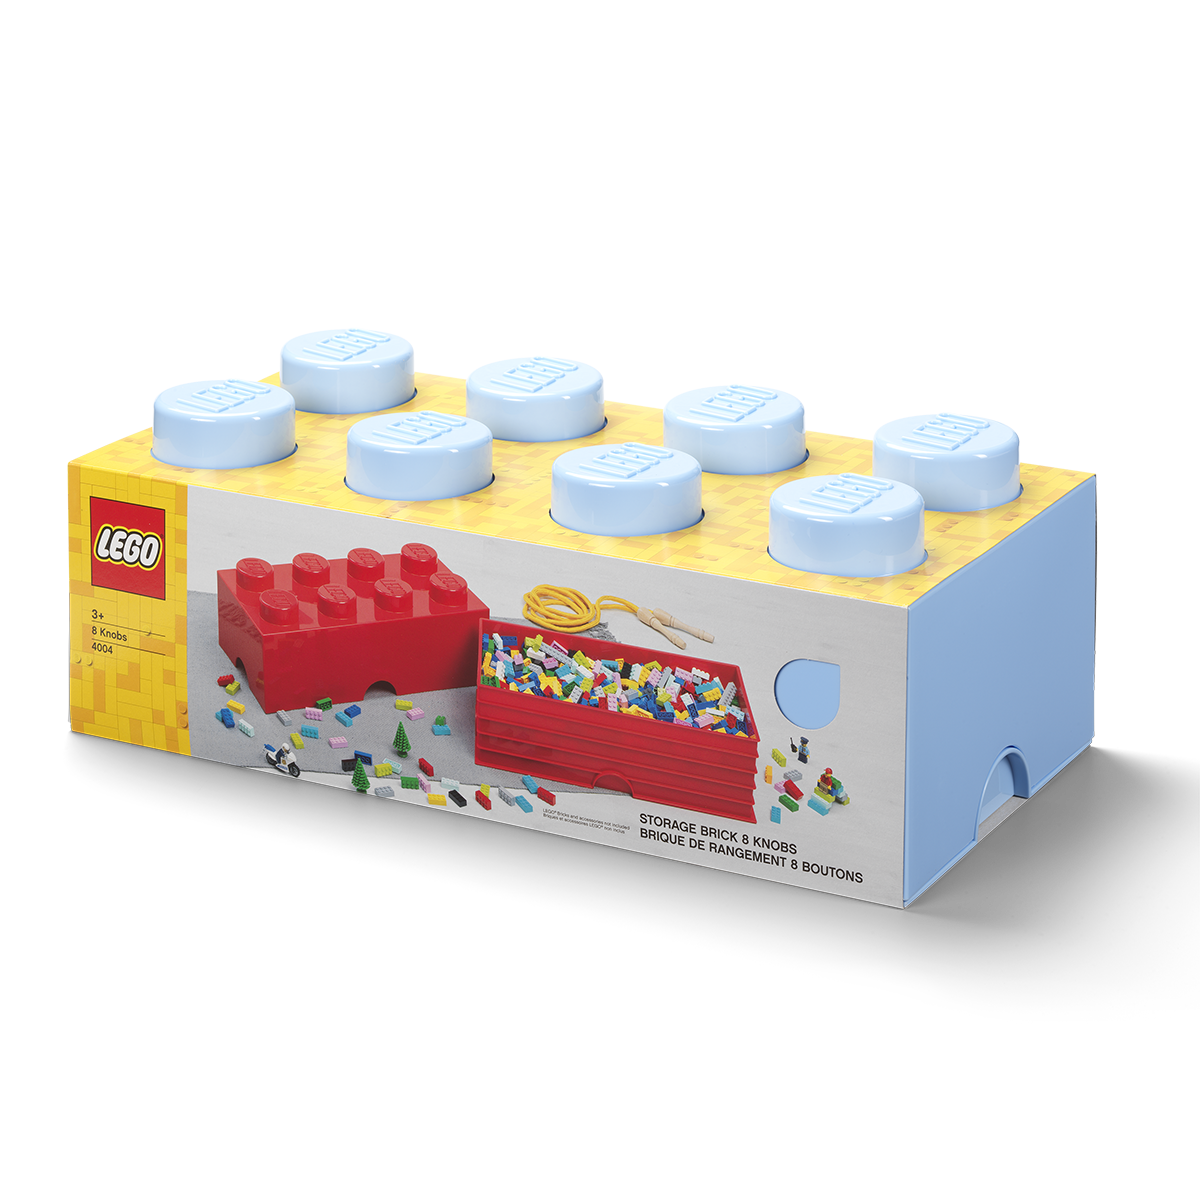 (DC) Contenedor Lego Brick 8 | Light Royal Blue